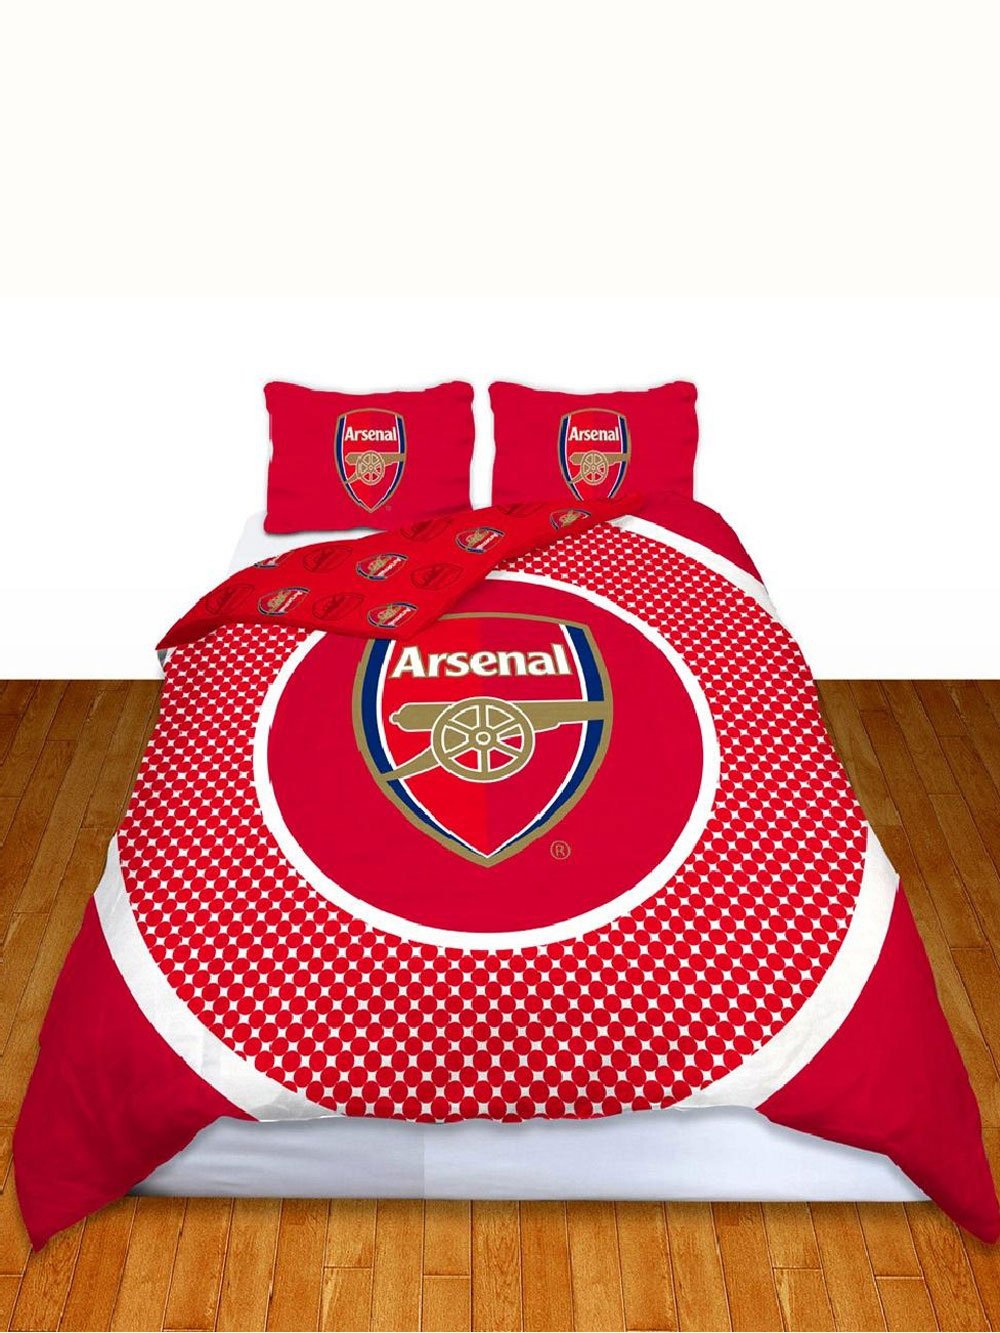 Arsenal Fc 'Bullseye' Football Panel Official Double Bed Duvet Quilt Cover Set